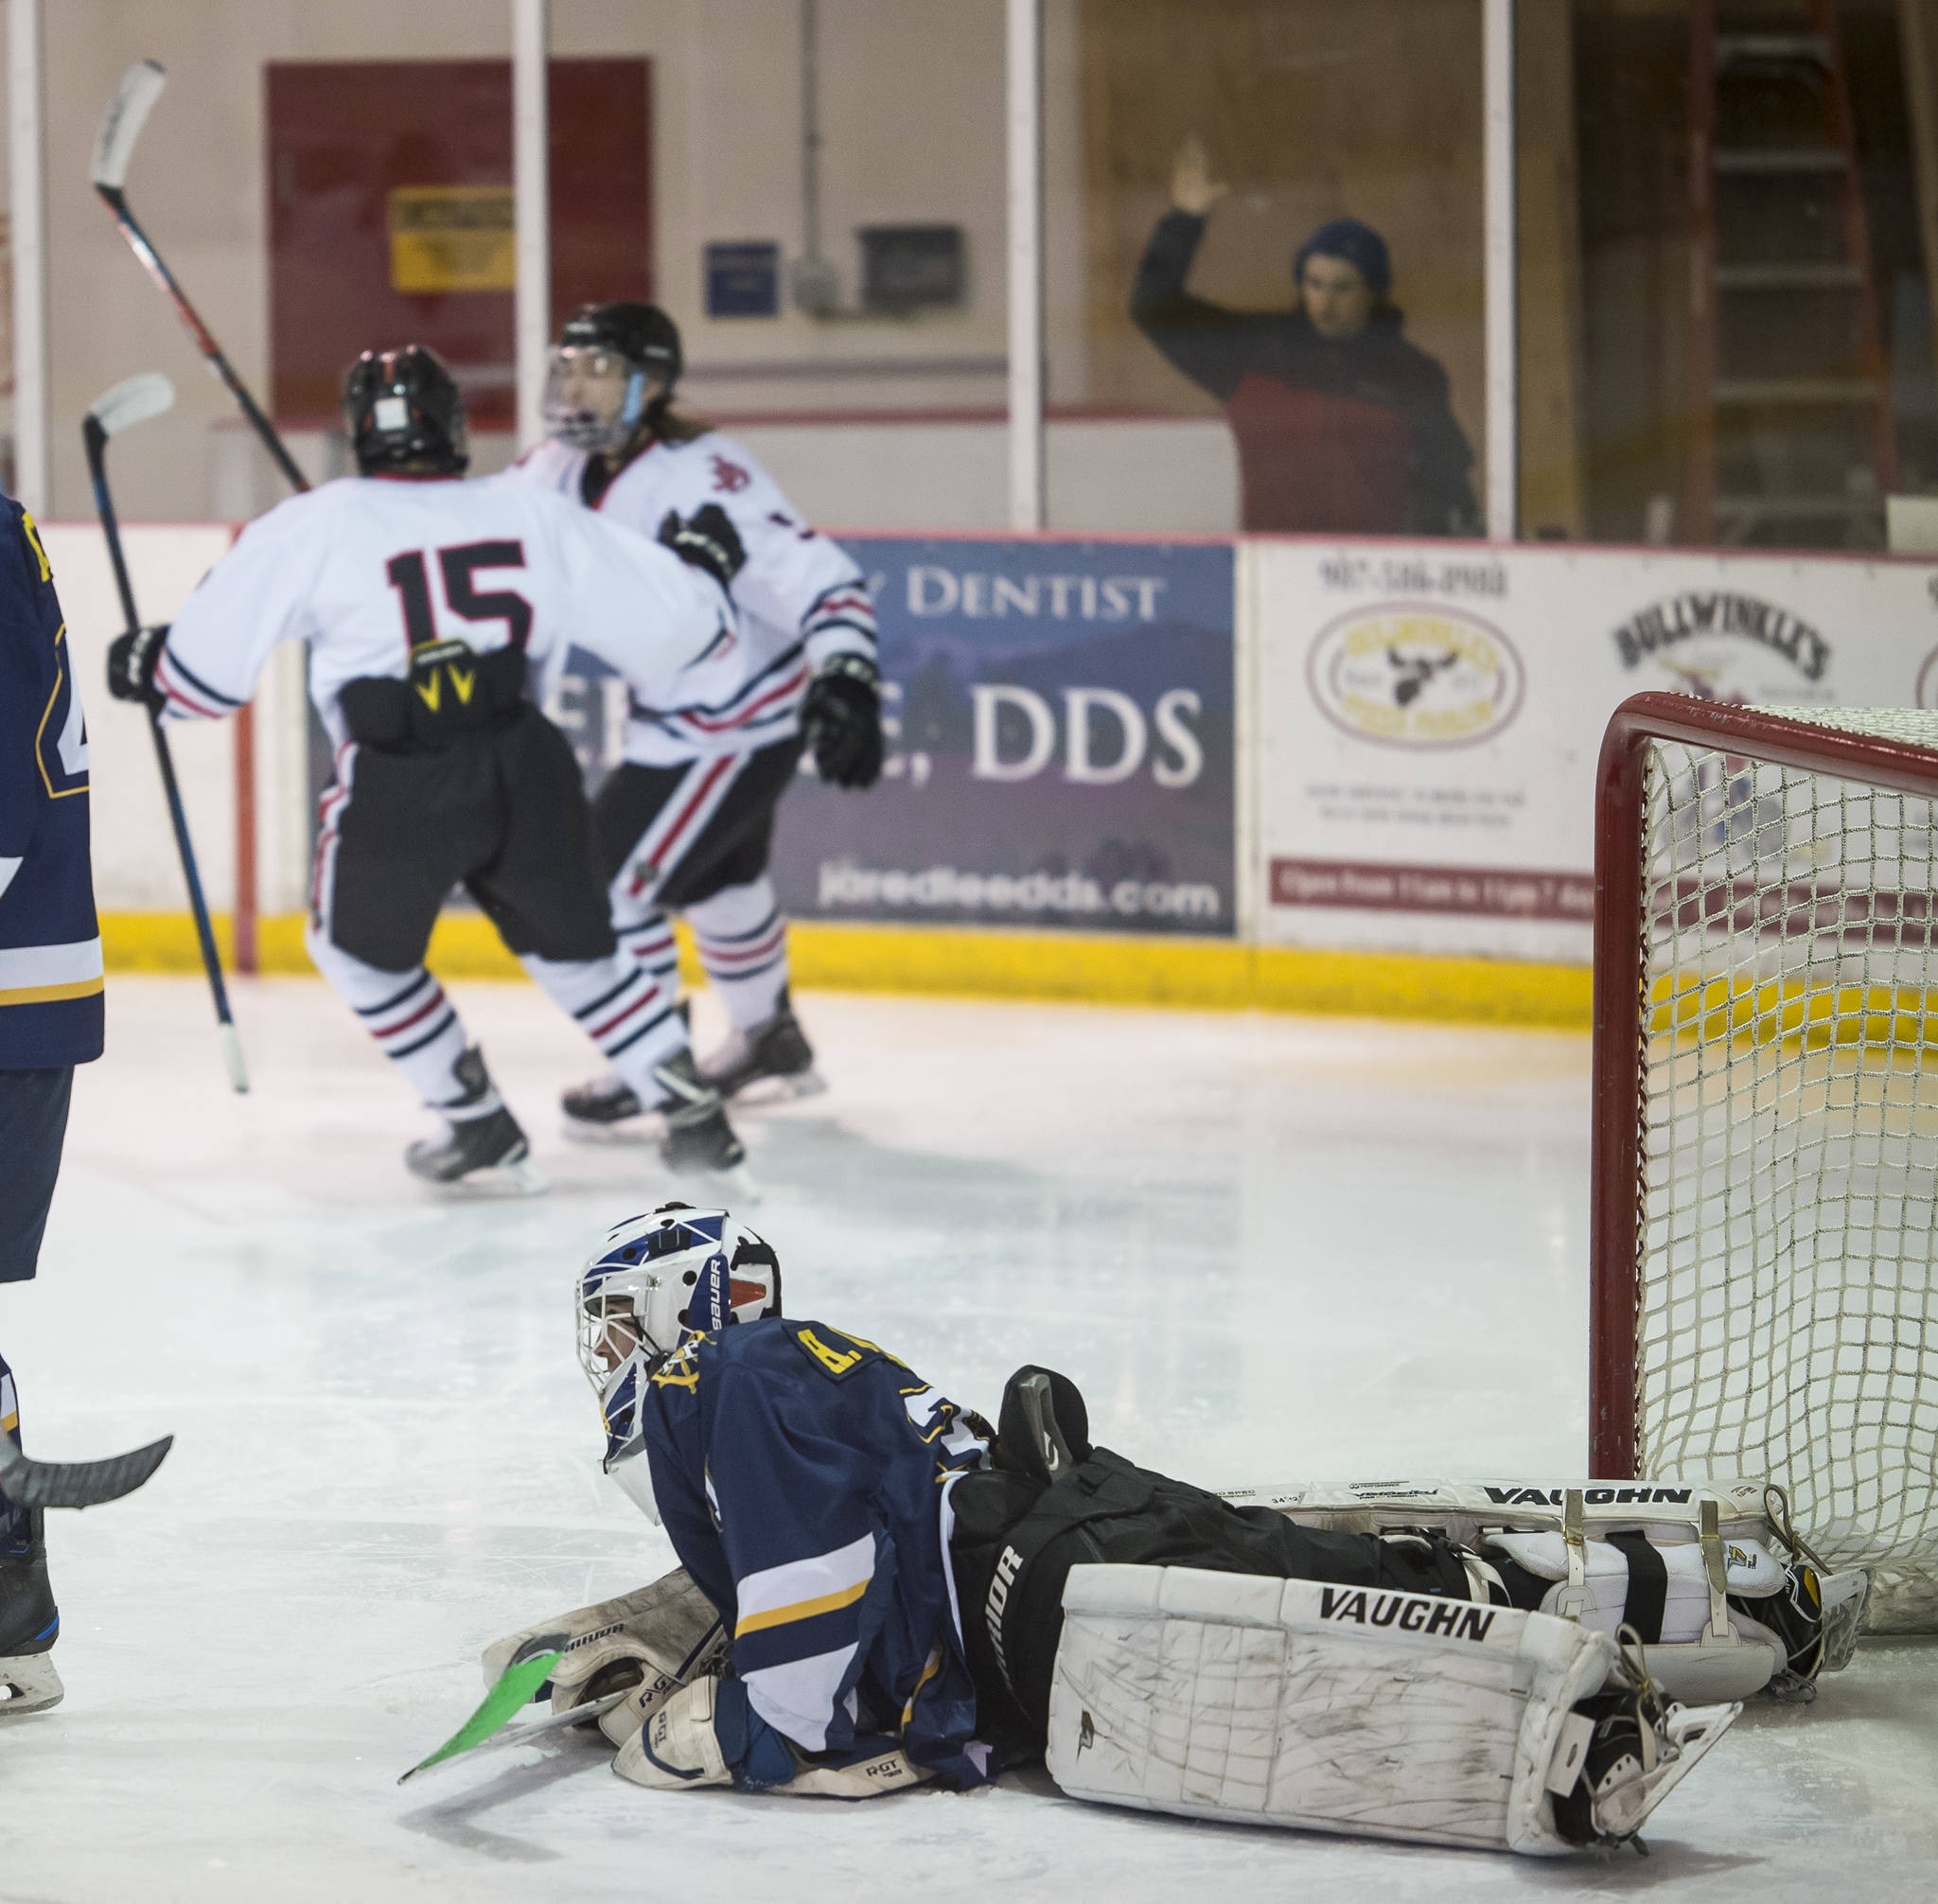 Juneau hockey scores weekend sweep of Homer